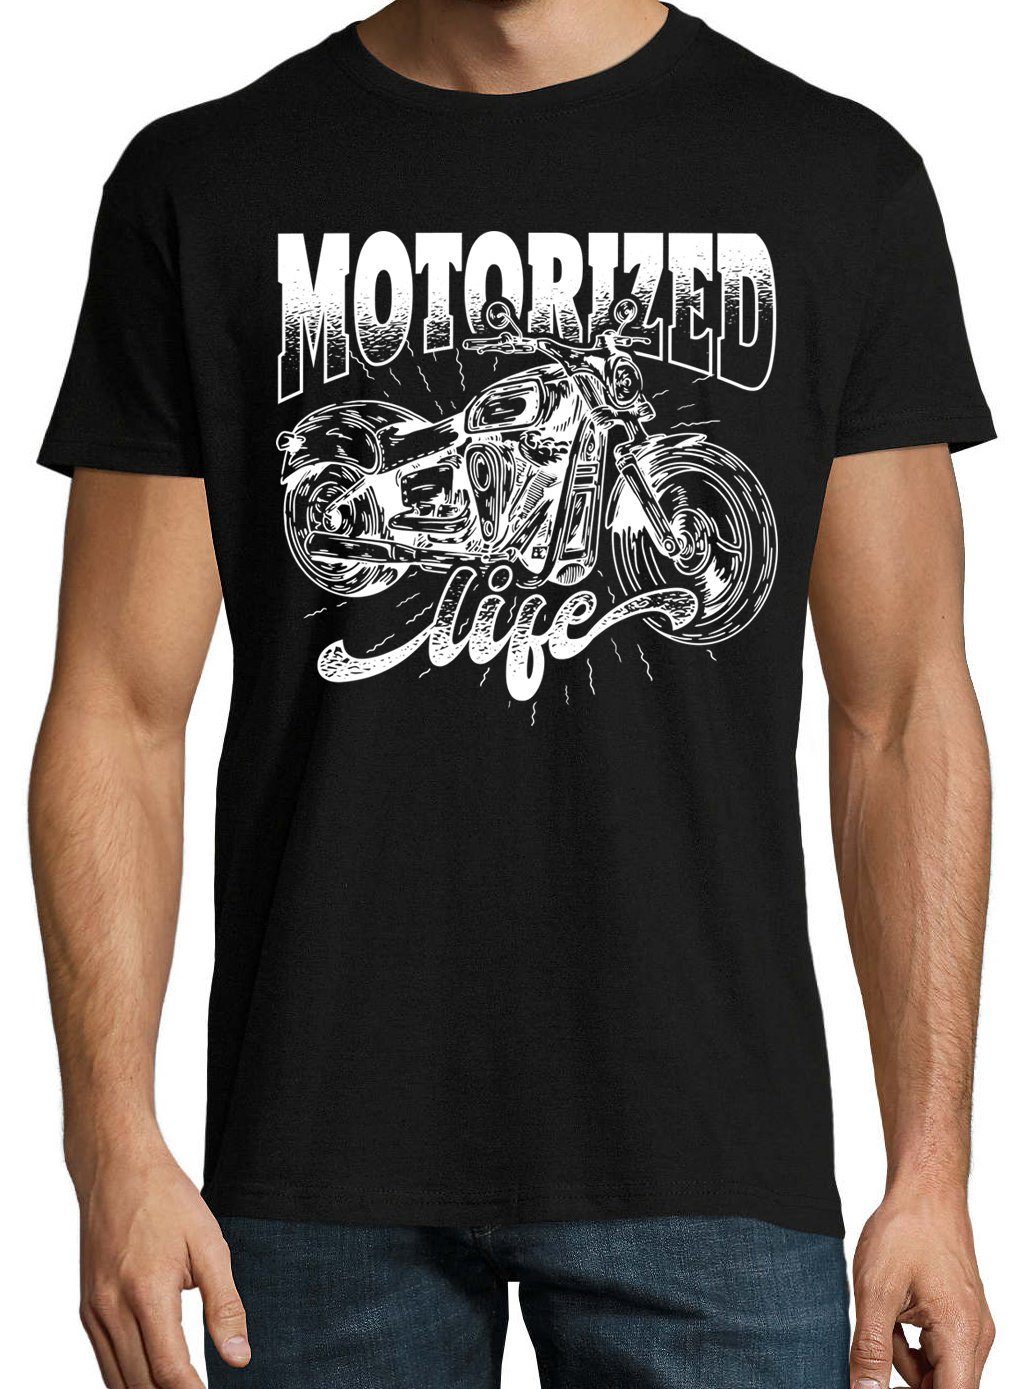 mit life Schwarz T-Shirt Youth Shirt lustigem Herren Motorized Spruch Designz